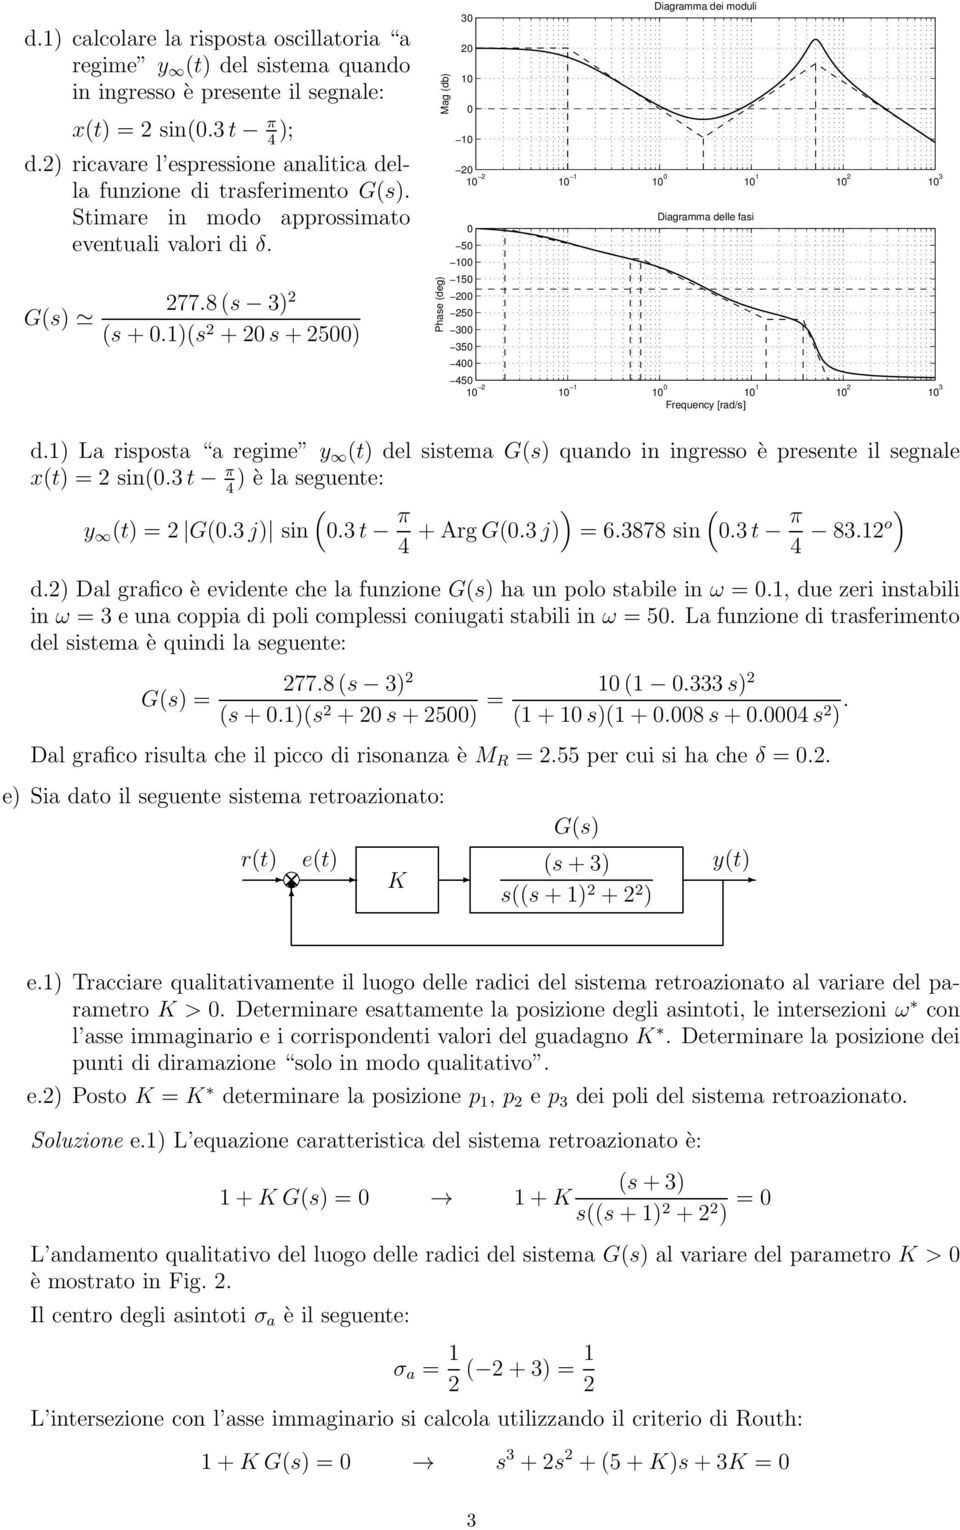 1)(s +s+) Mag (db) Phase (deg) 3 1 1 Diagramma dei moduli 1 1 1 1 1 1 1 1 3 1 1 3 3 Diagramma delle fasi 1 1 1 1 1 1 1 1 3 Frequency [rad/s] d.